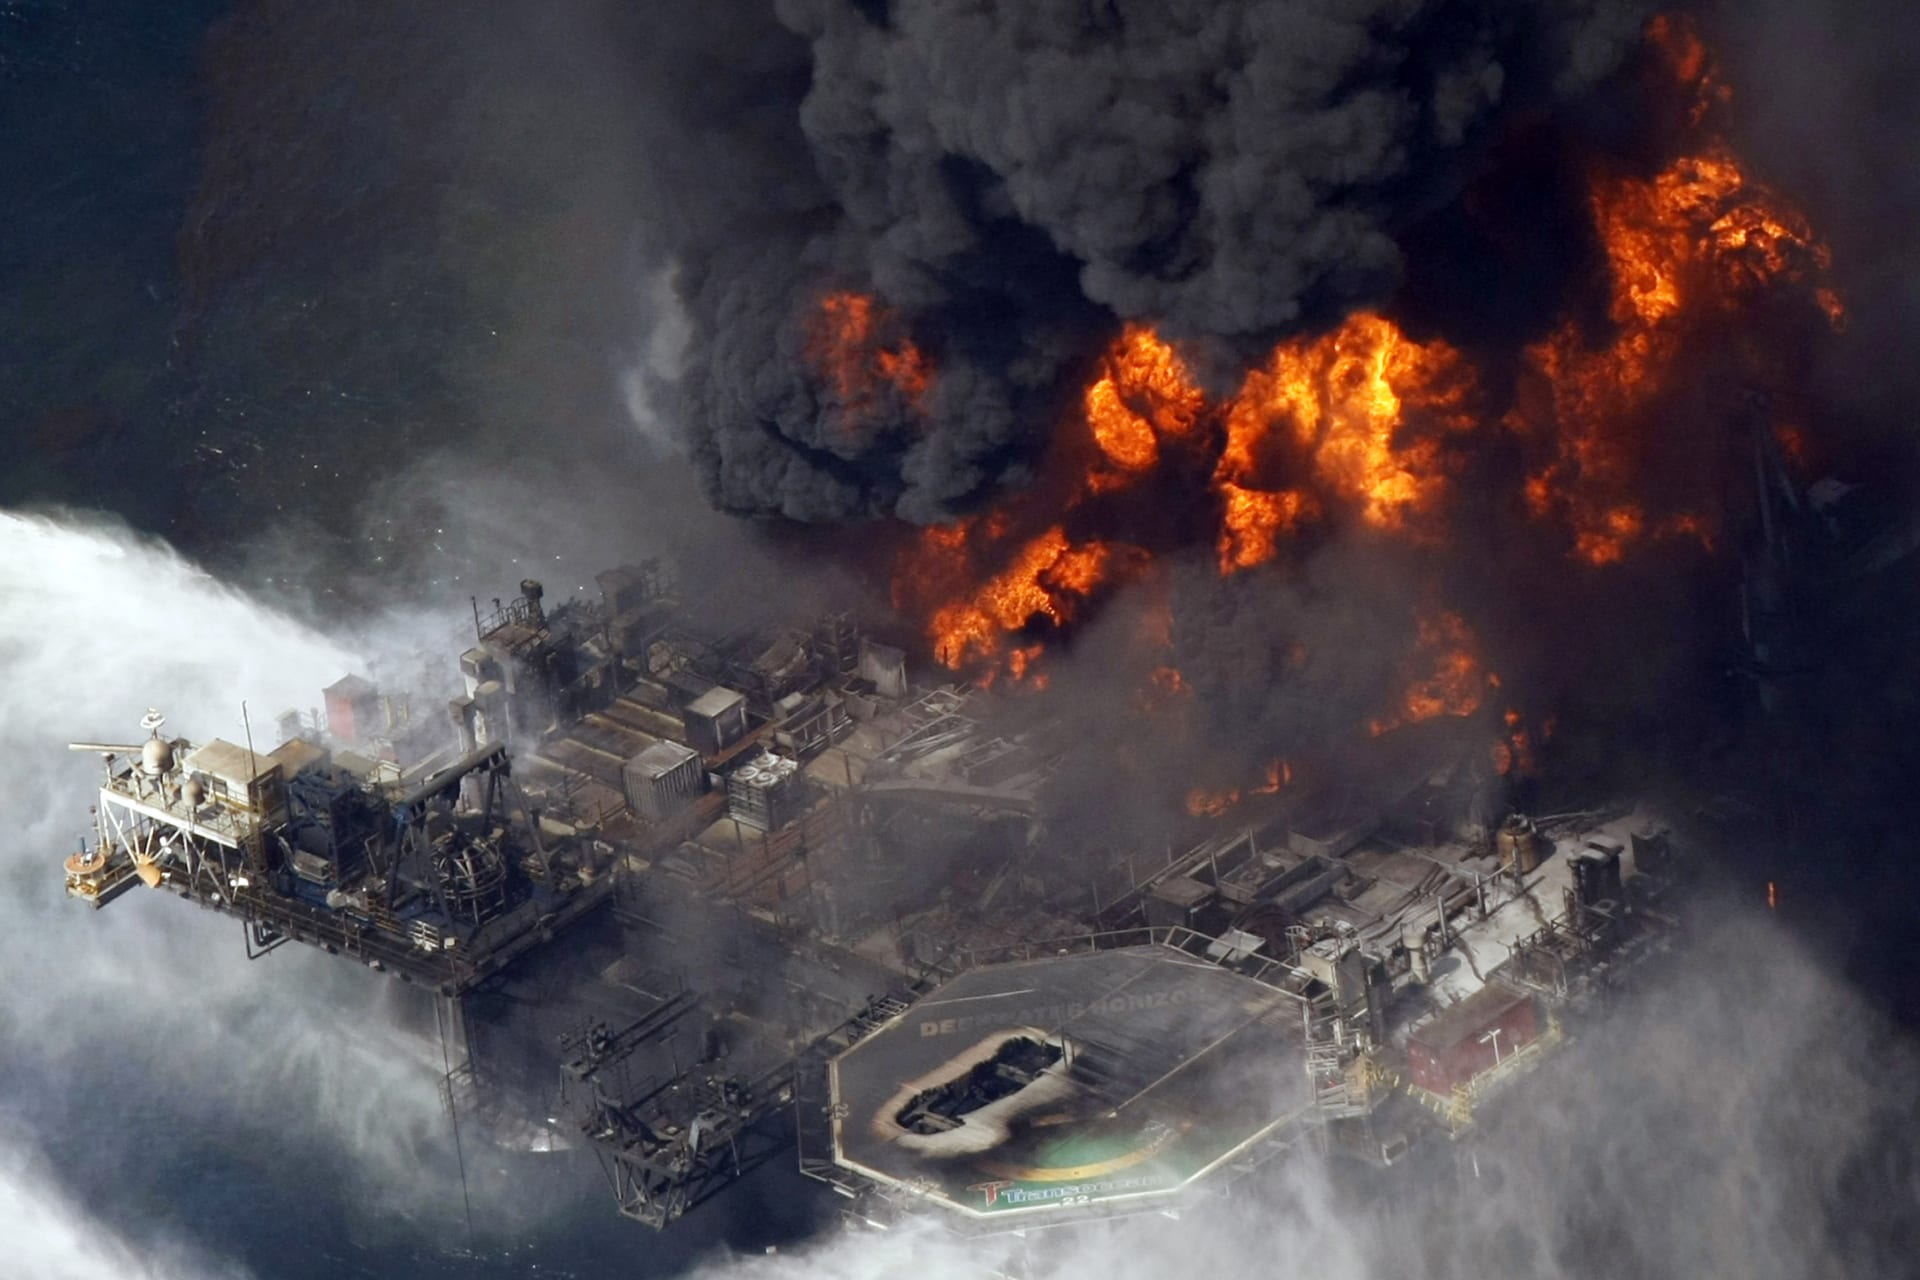 Mohutný pořár ropné plošiny Deepwater Horizon zachycený 21. dubna 2010